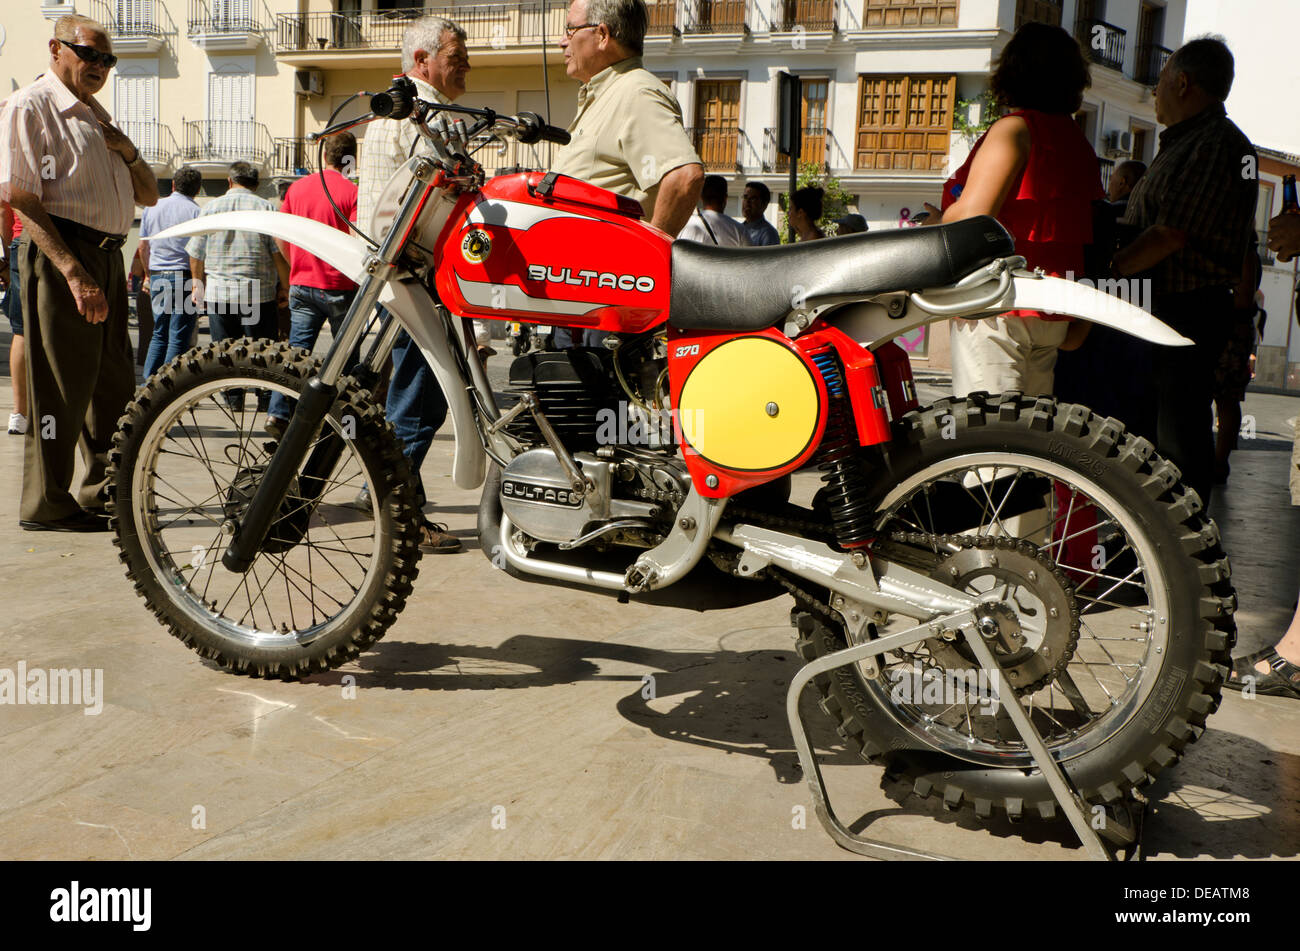 Bultaco 370 moto classique sur l'affichage à une réunion à moto vintage Coin Andalousie, espagne. Banque D'Images